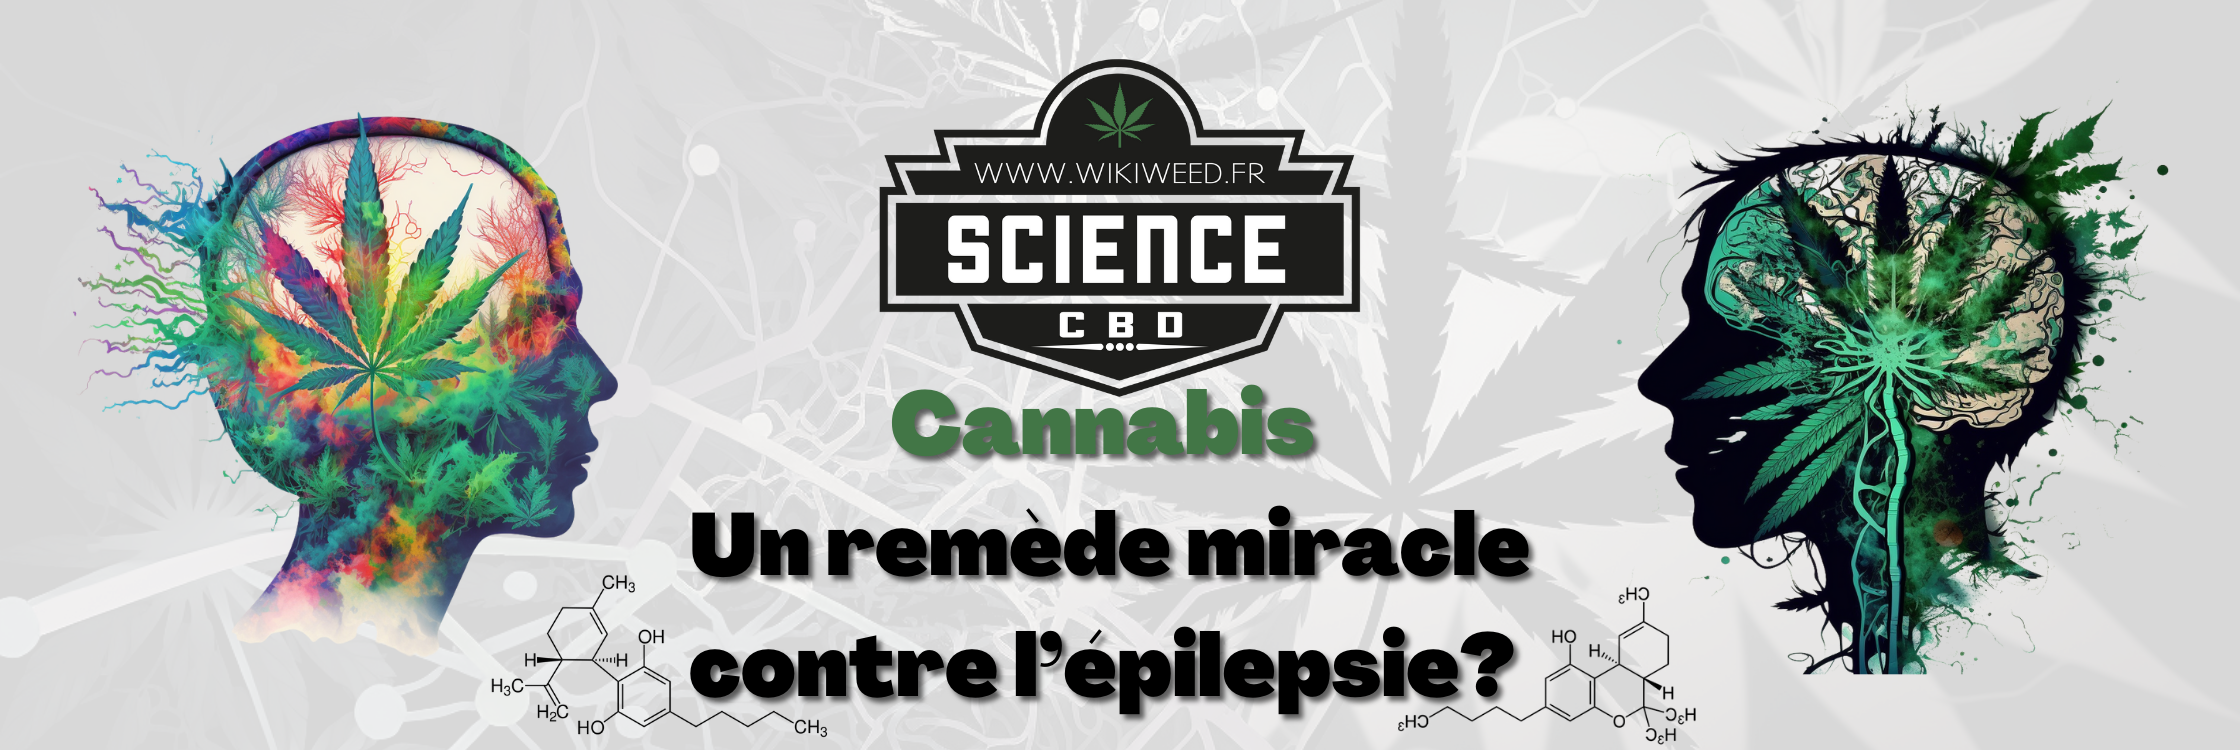 Cannabis: Le remède miracle contre l’épilepsie?